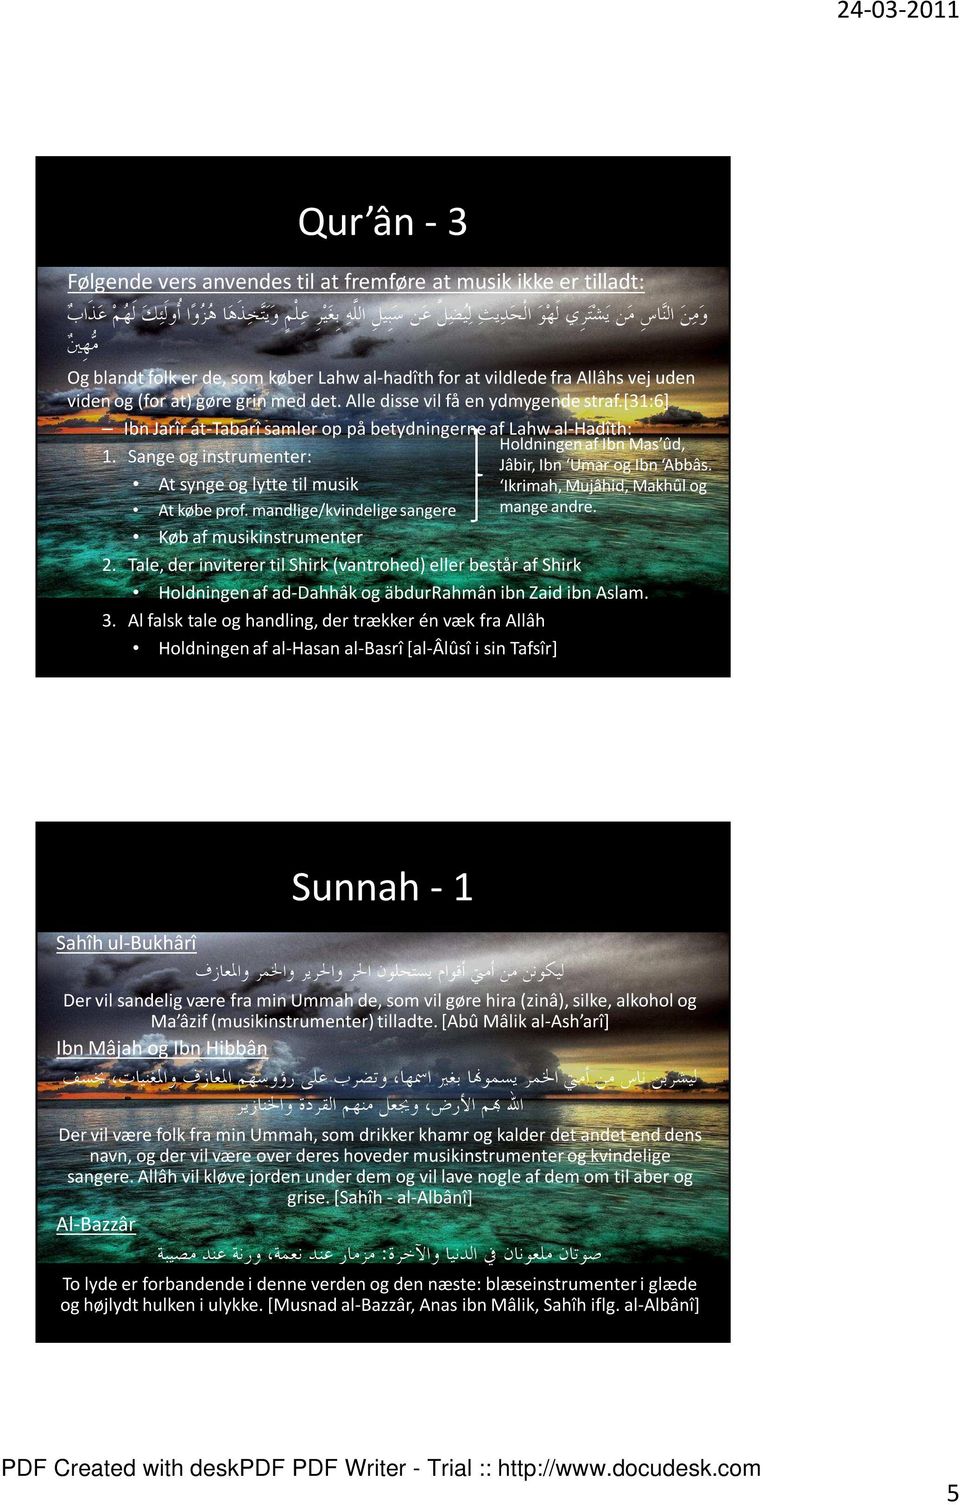 [31:6] Ibn Jarîr at-tabarî samler op på betydningerne af Lahw al-hadîth: Holdningen af Ibn Mas ûd, 1. Sange og instrumenter: Jâbir, Ibn Umar og Ibn Abbâs.